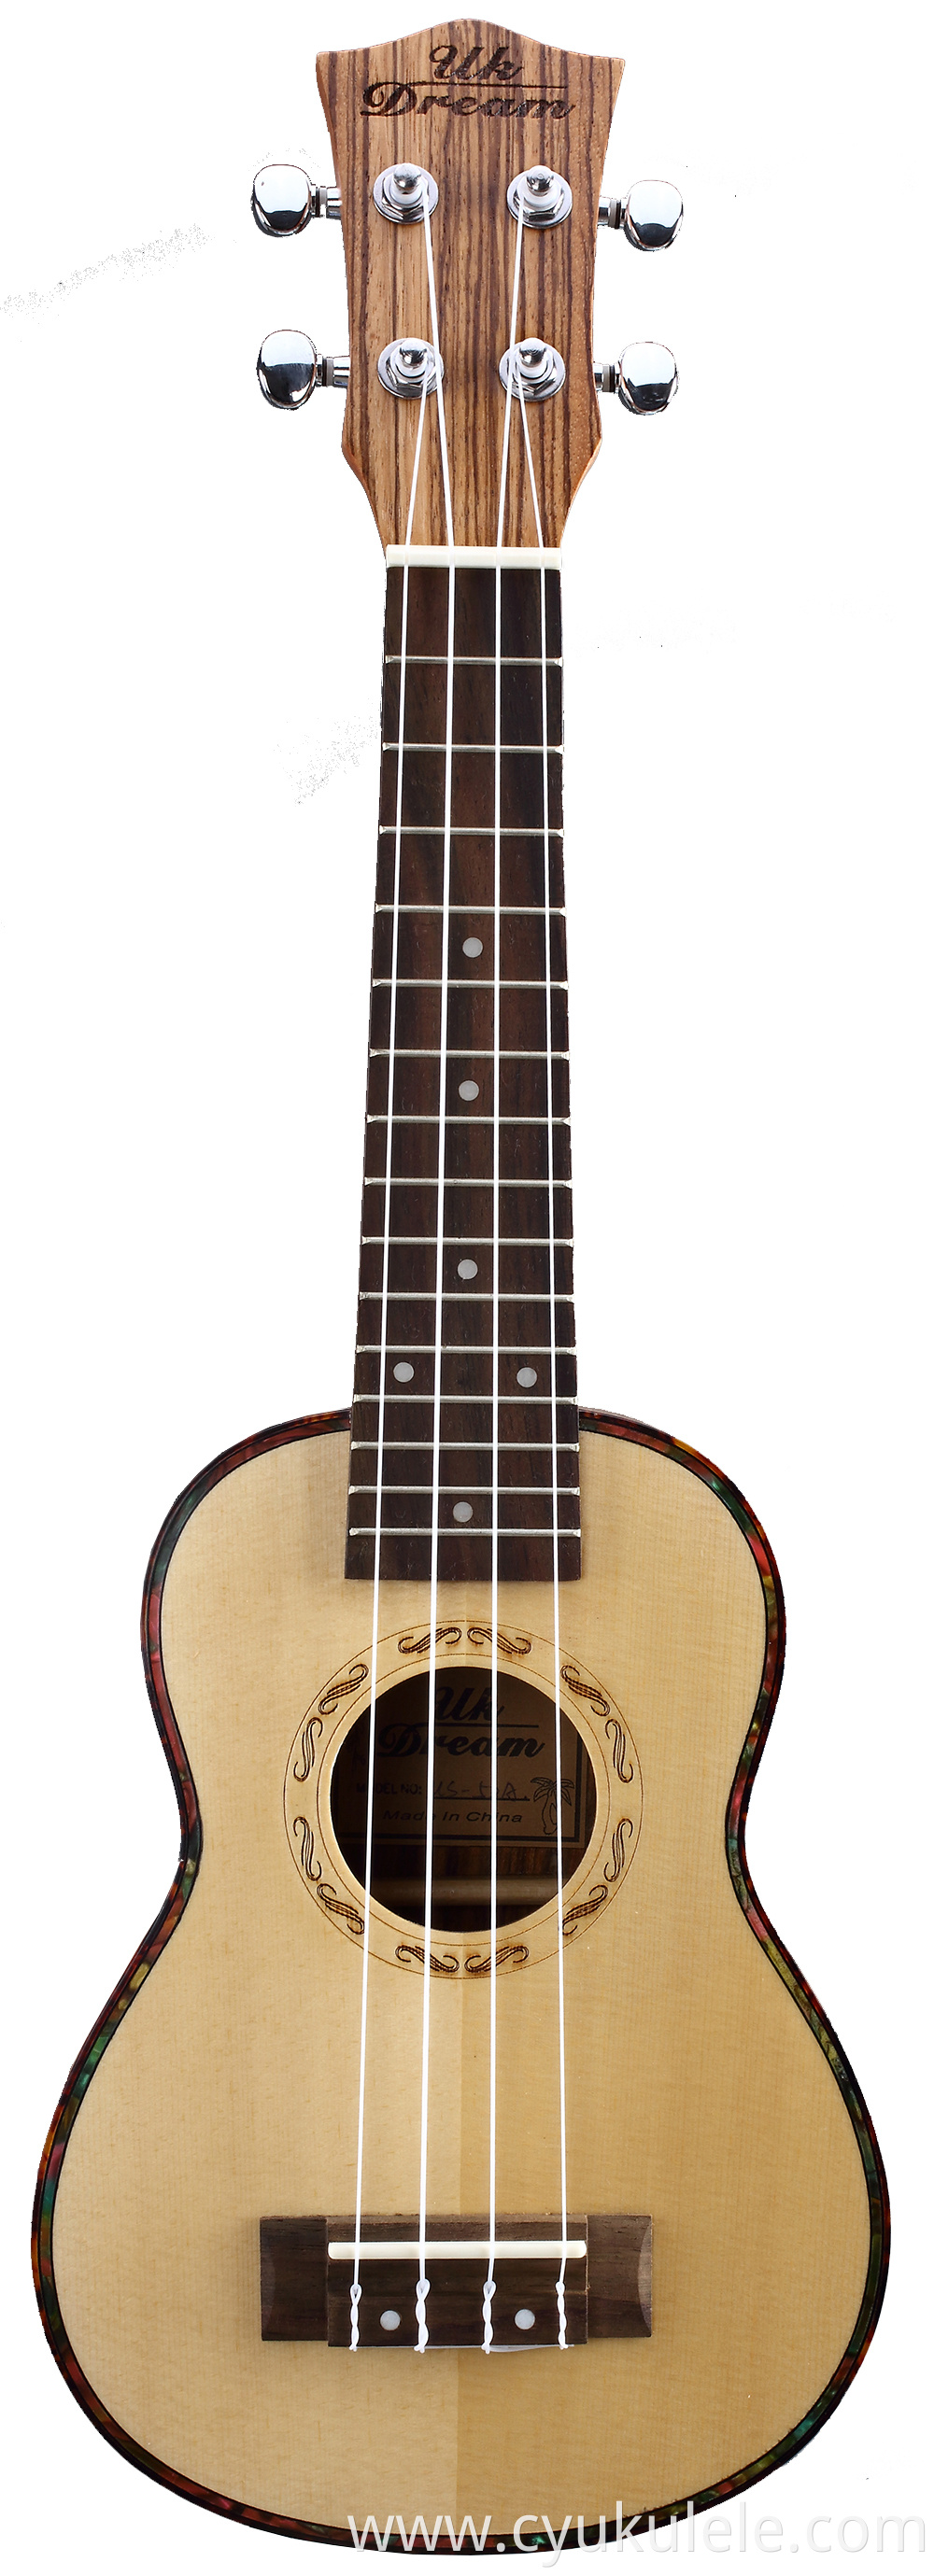 ukulele91